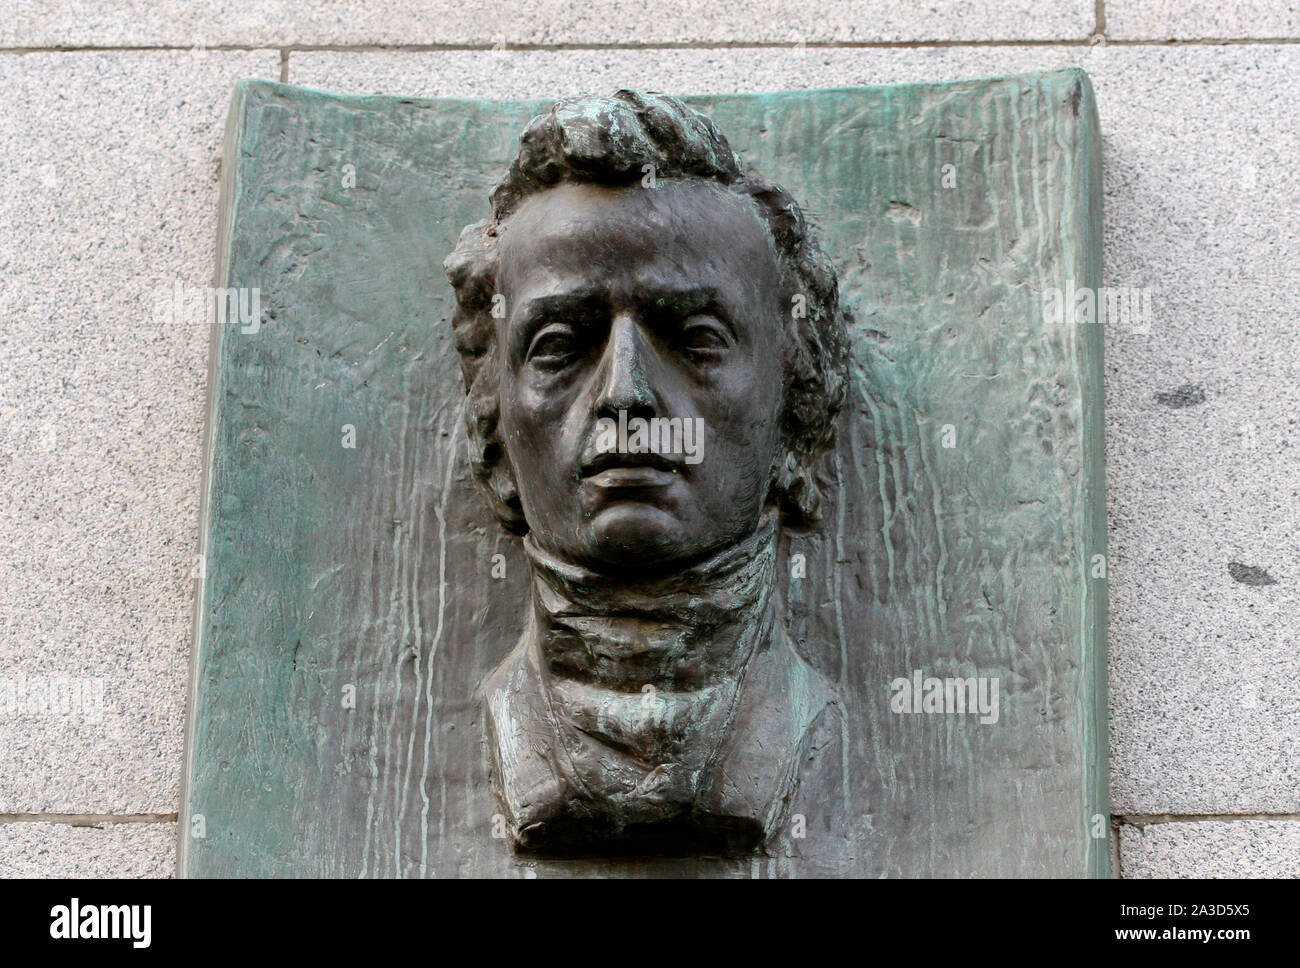 Frederic Chopin (1810-1849). Virtuoso pianista y compositor polaco de la época romántica. Placa conmemorativa en la pared del Banco Nacional Checo, casa donde Chopin vivió desde 1829 hasta 1830 en la ciudad. Praga, República Checa. Foto de stock